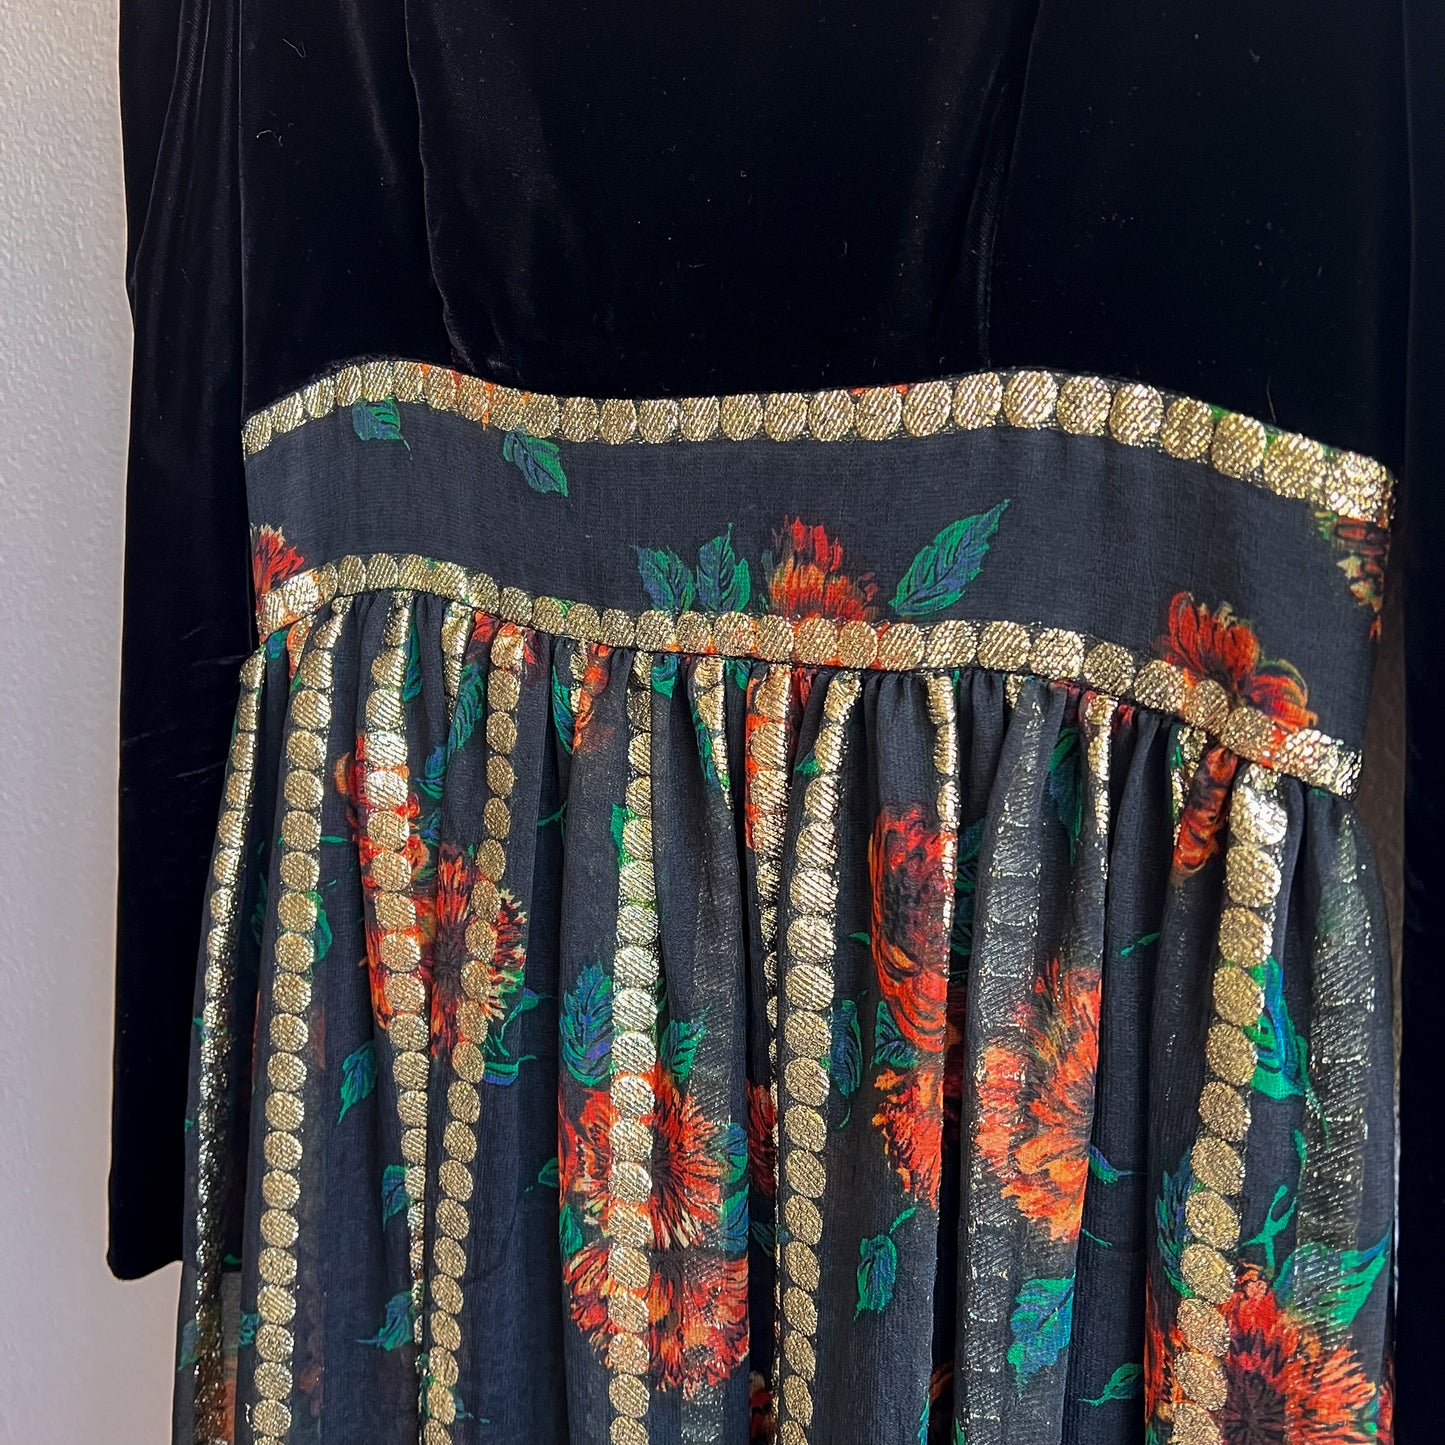 1960s Black Velvet Gown With Metallic Print Skirt (S/M)